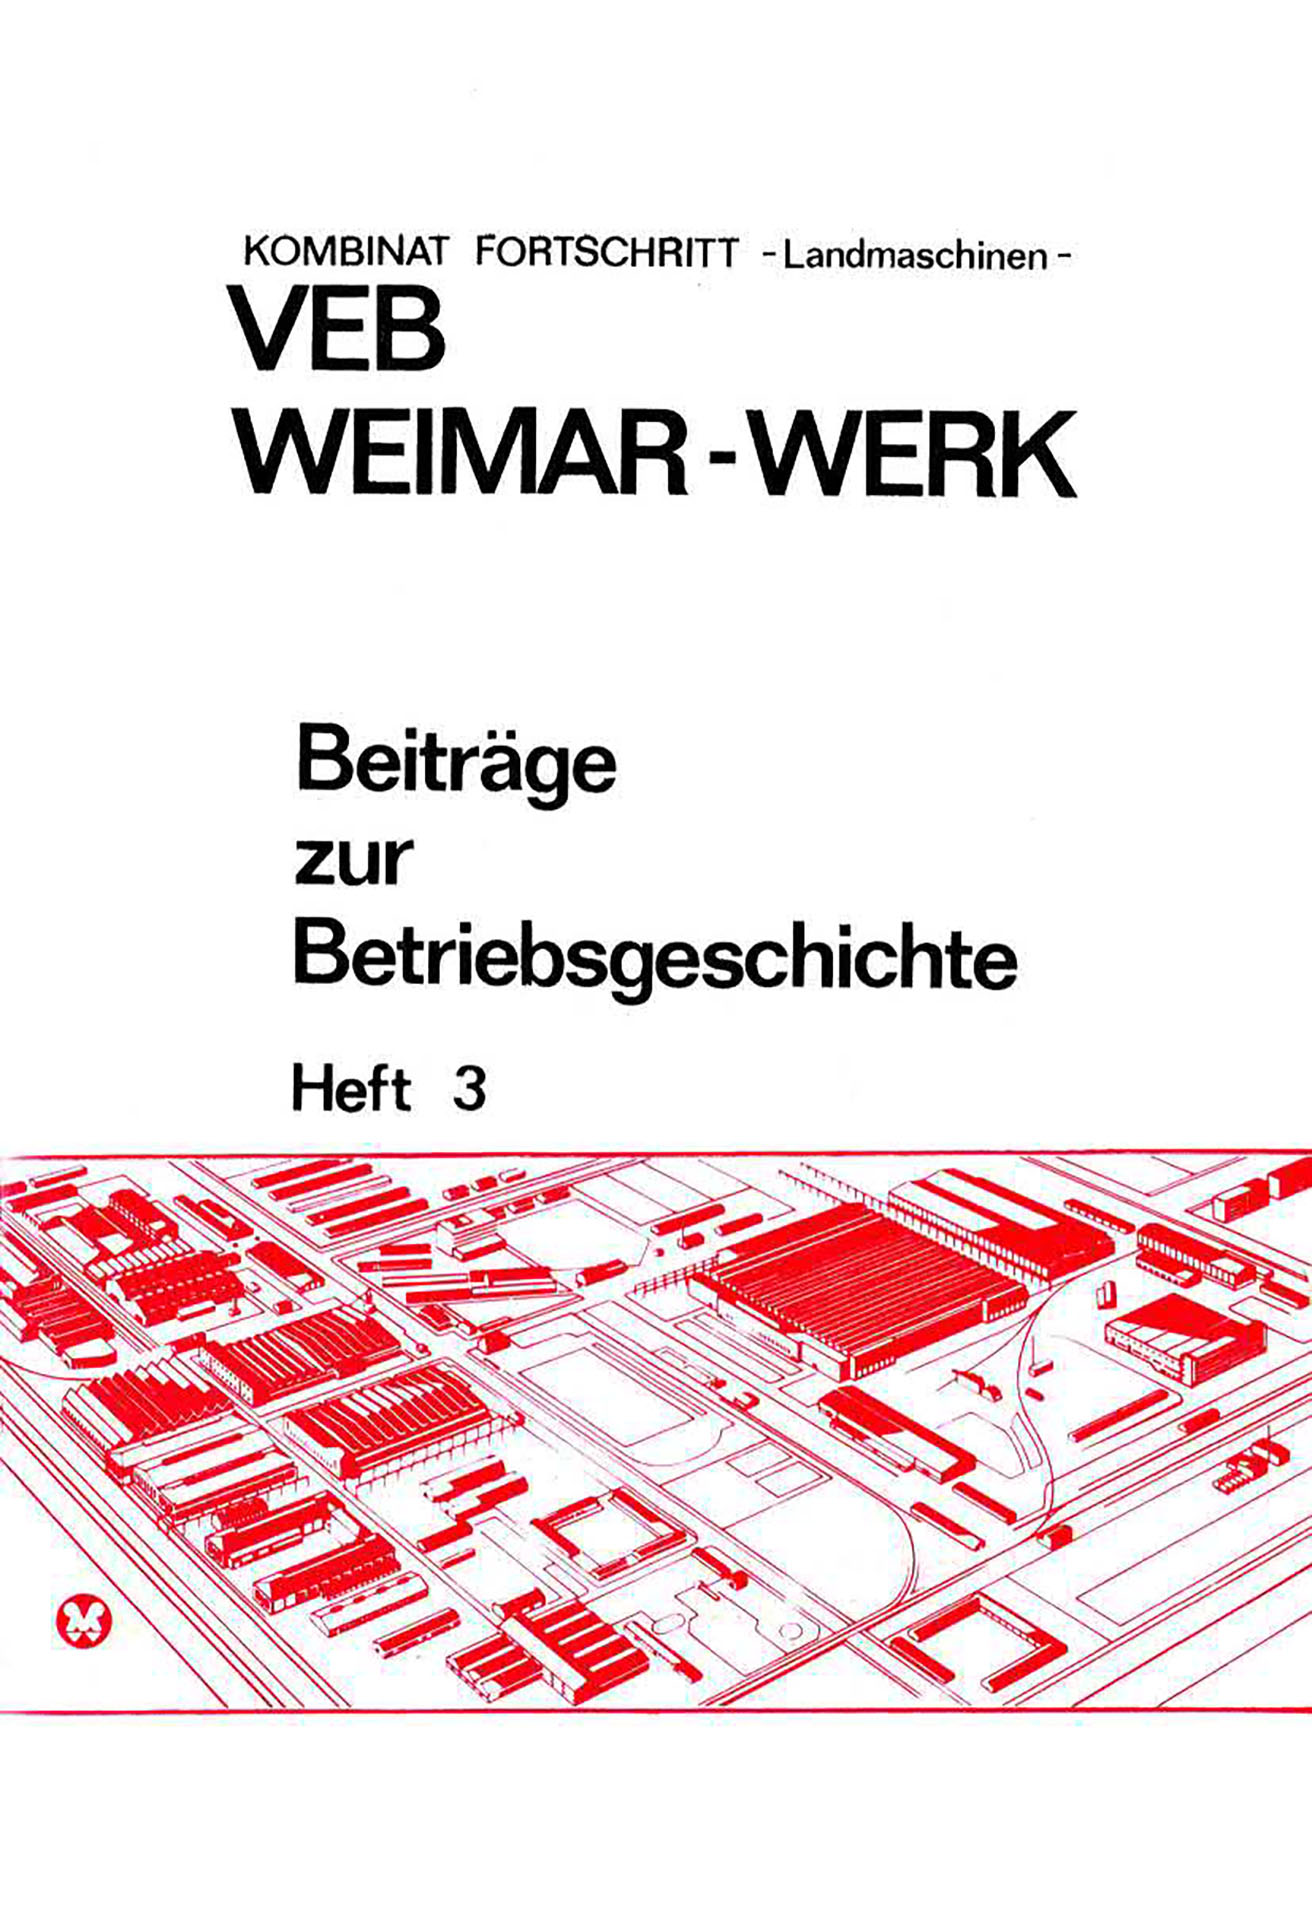 VEB Weimar-Werk - Beiträge zur Betriebsgeschichte - Teil 3 - Krahmer, Heinz / Klein, Andreas / Eckart, Karl / Straube, Joachim / Greyer, Wolfgang